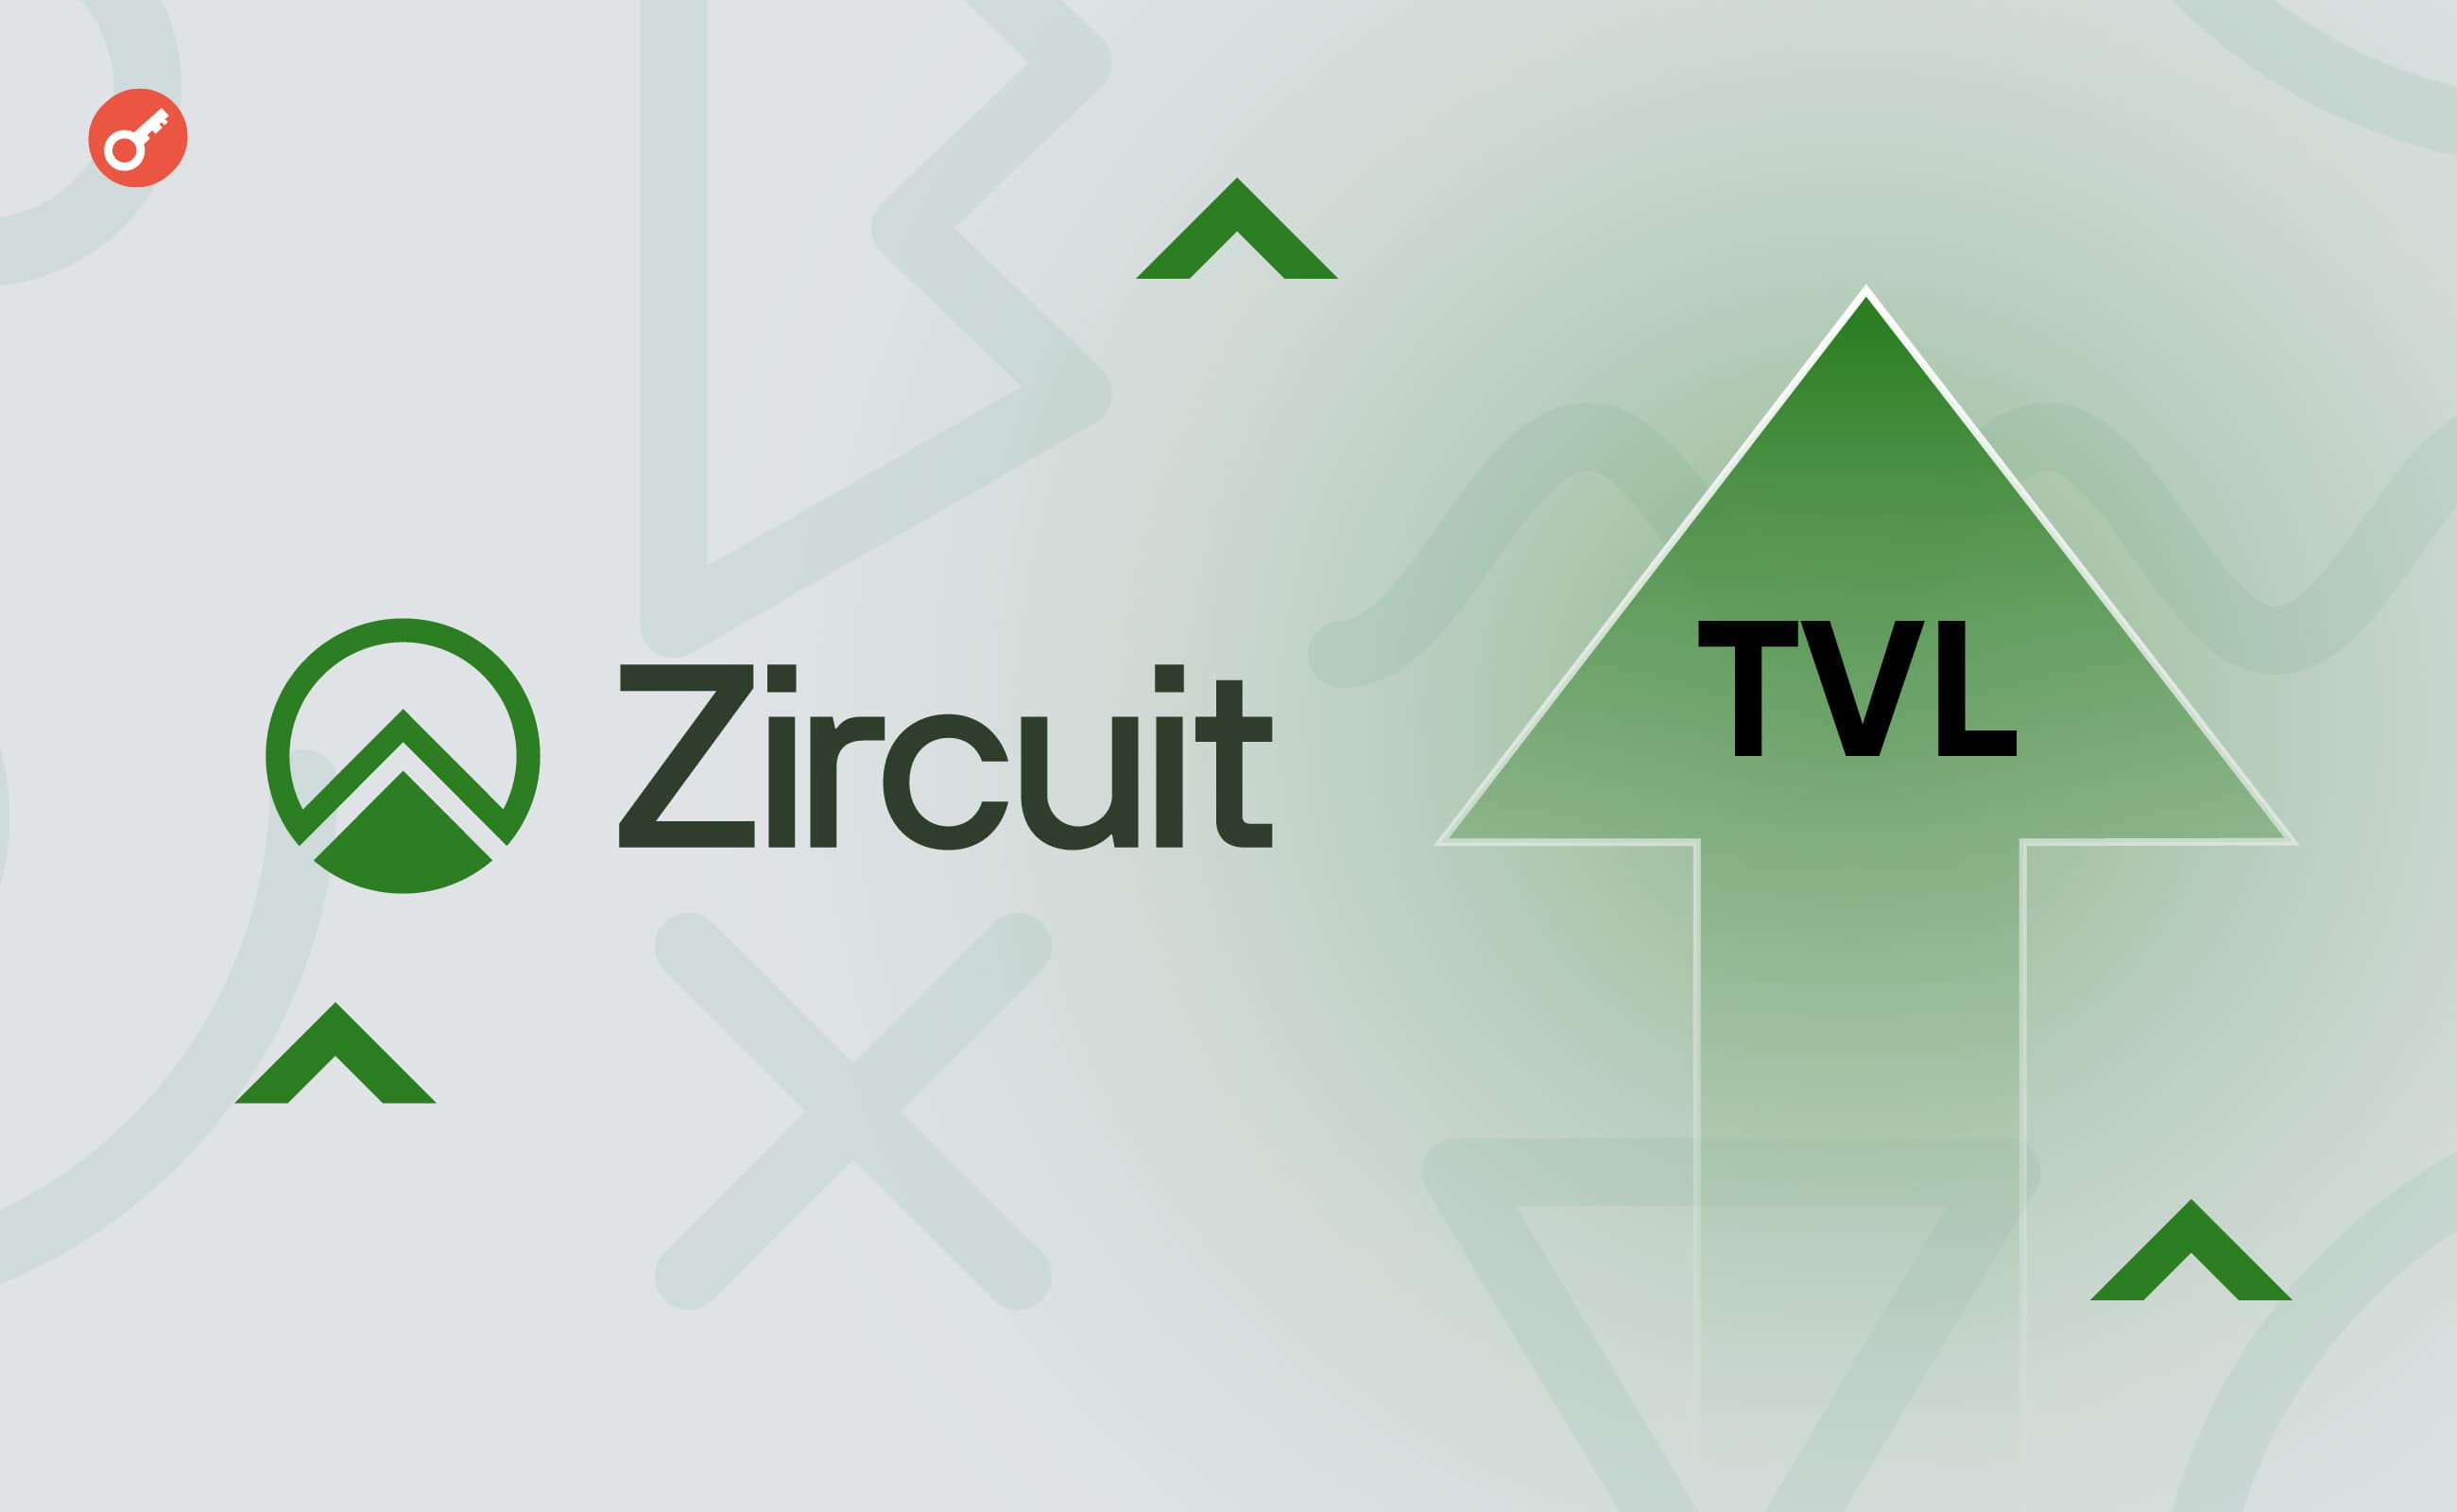 Команда Zircuit объявила о росте TVL до $500 млн и интеграции Ethena. Заглавный коллаж новости.